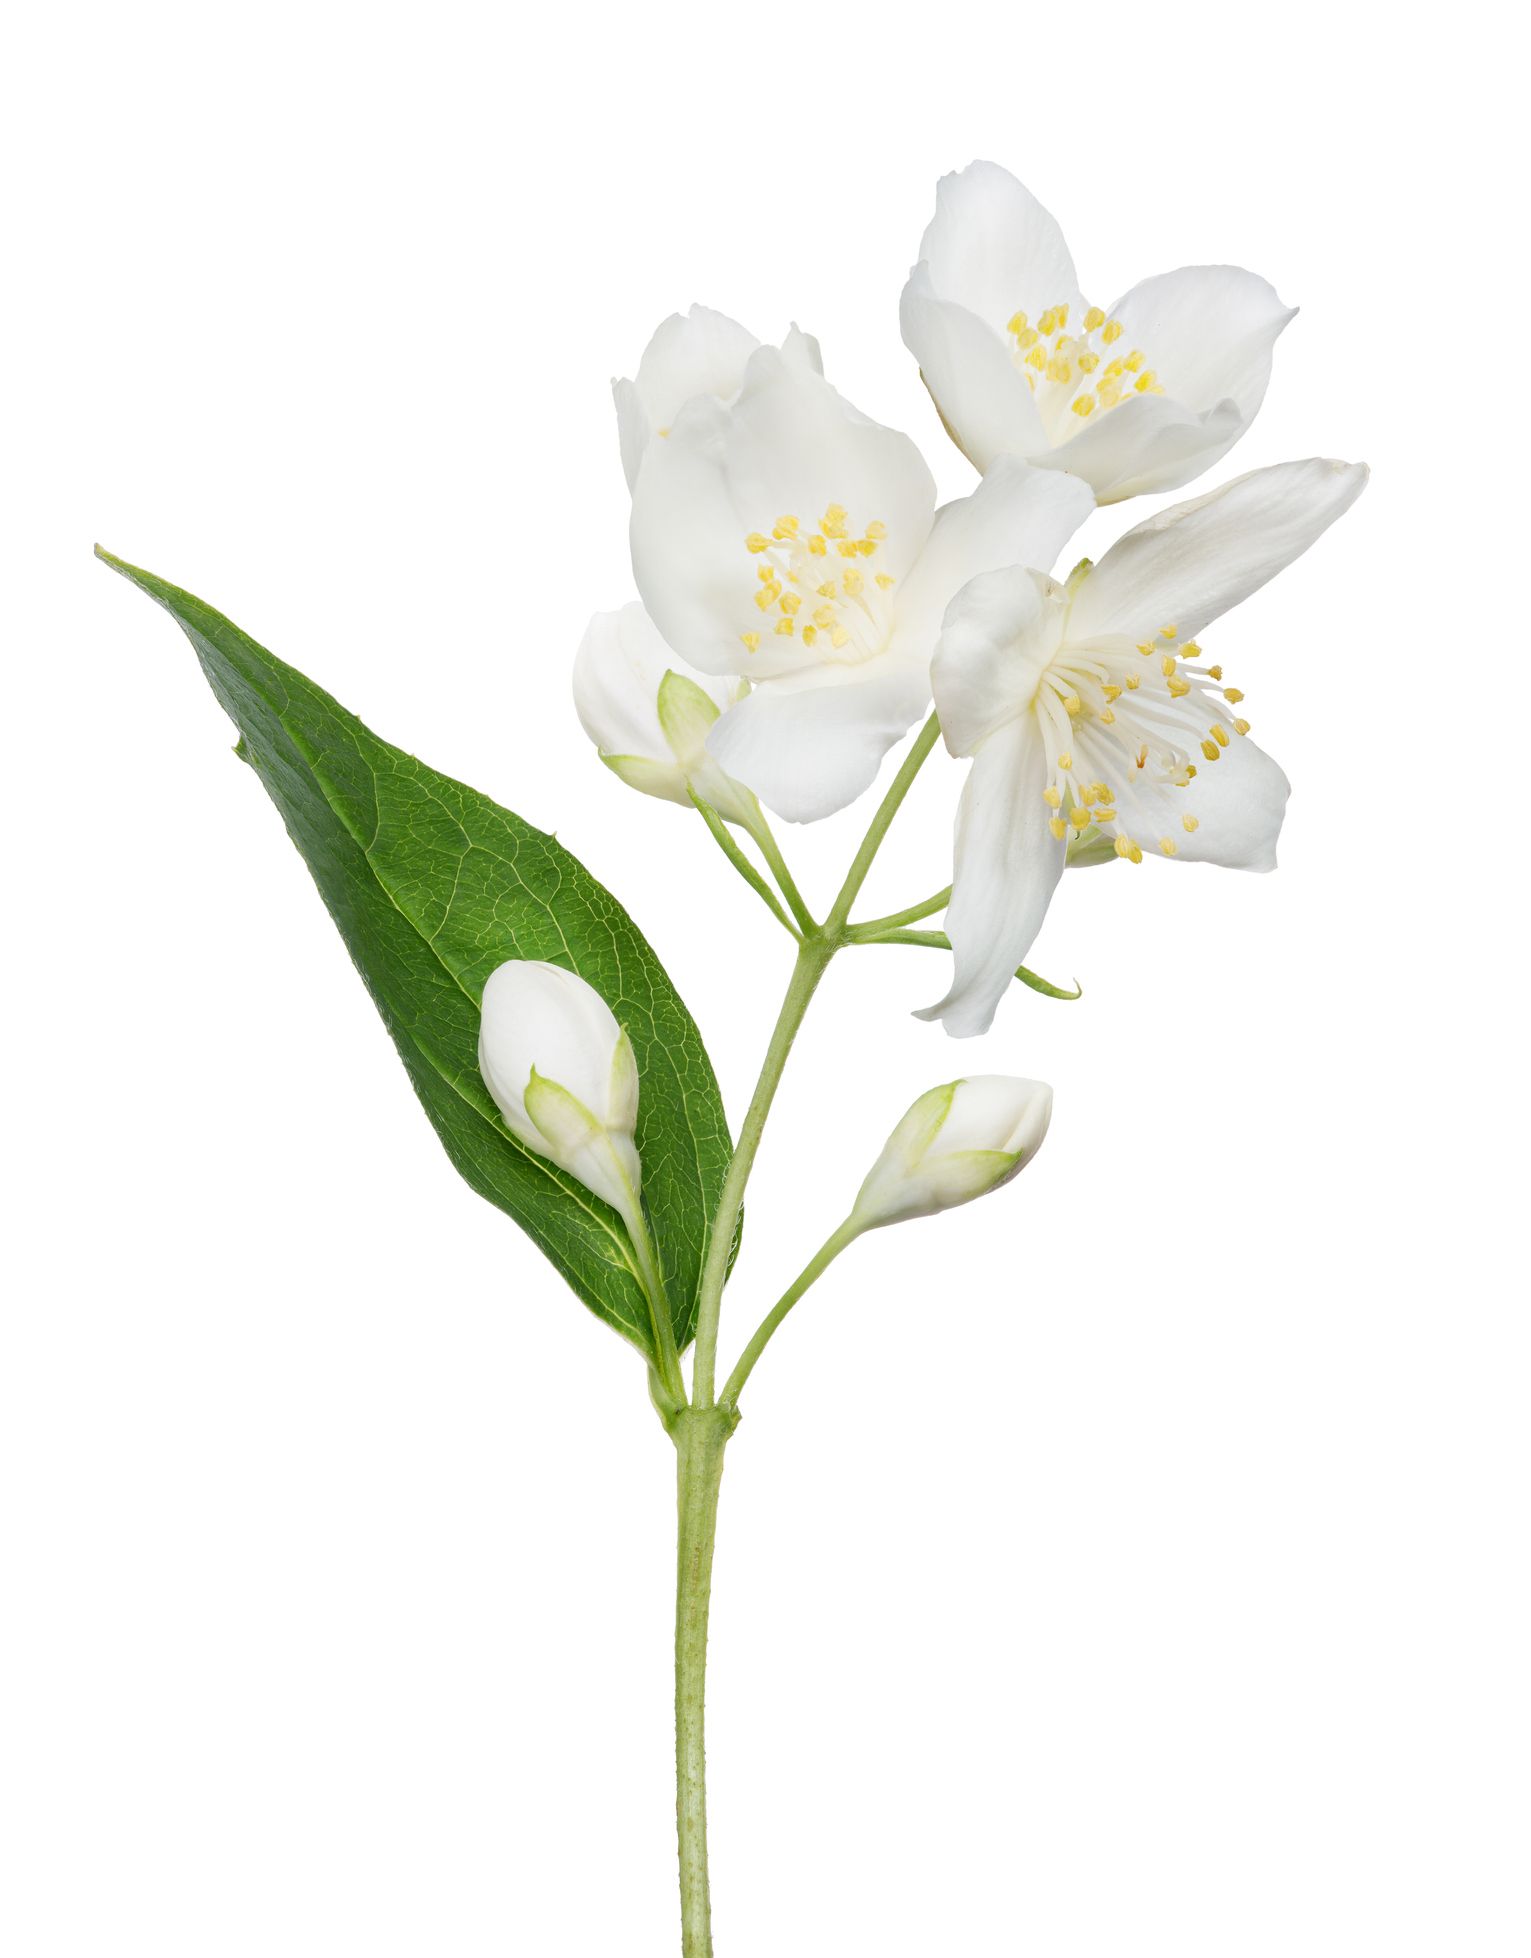 Biele kvety jazmínu